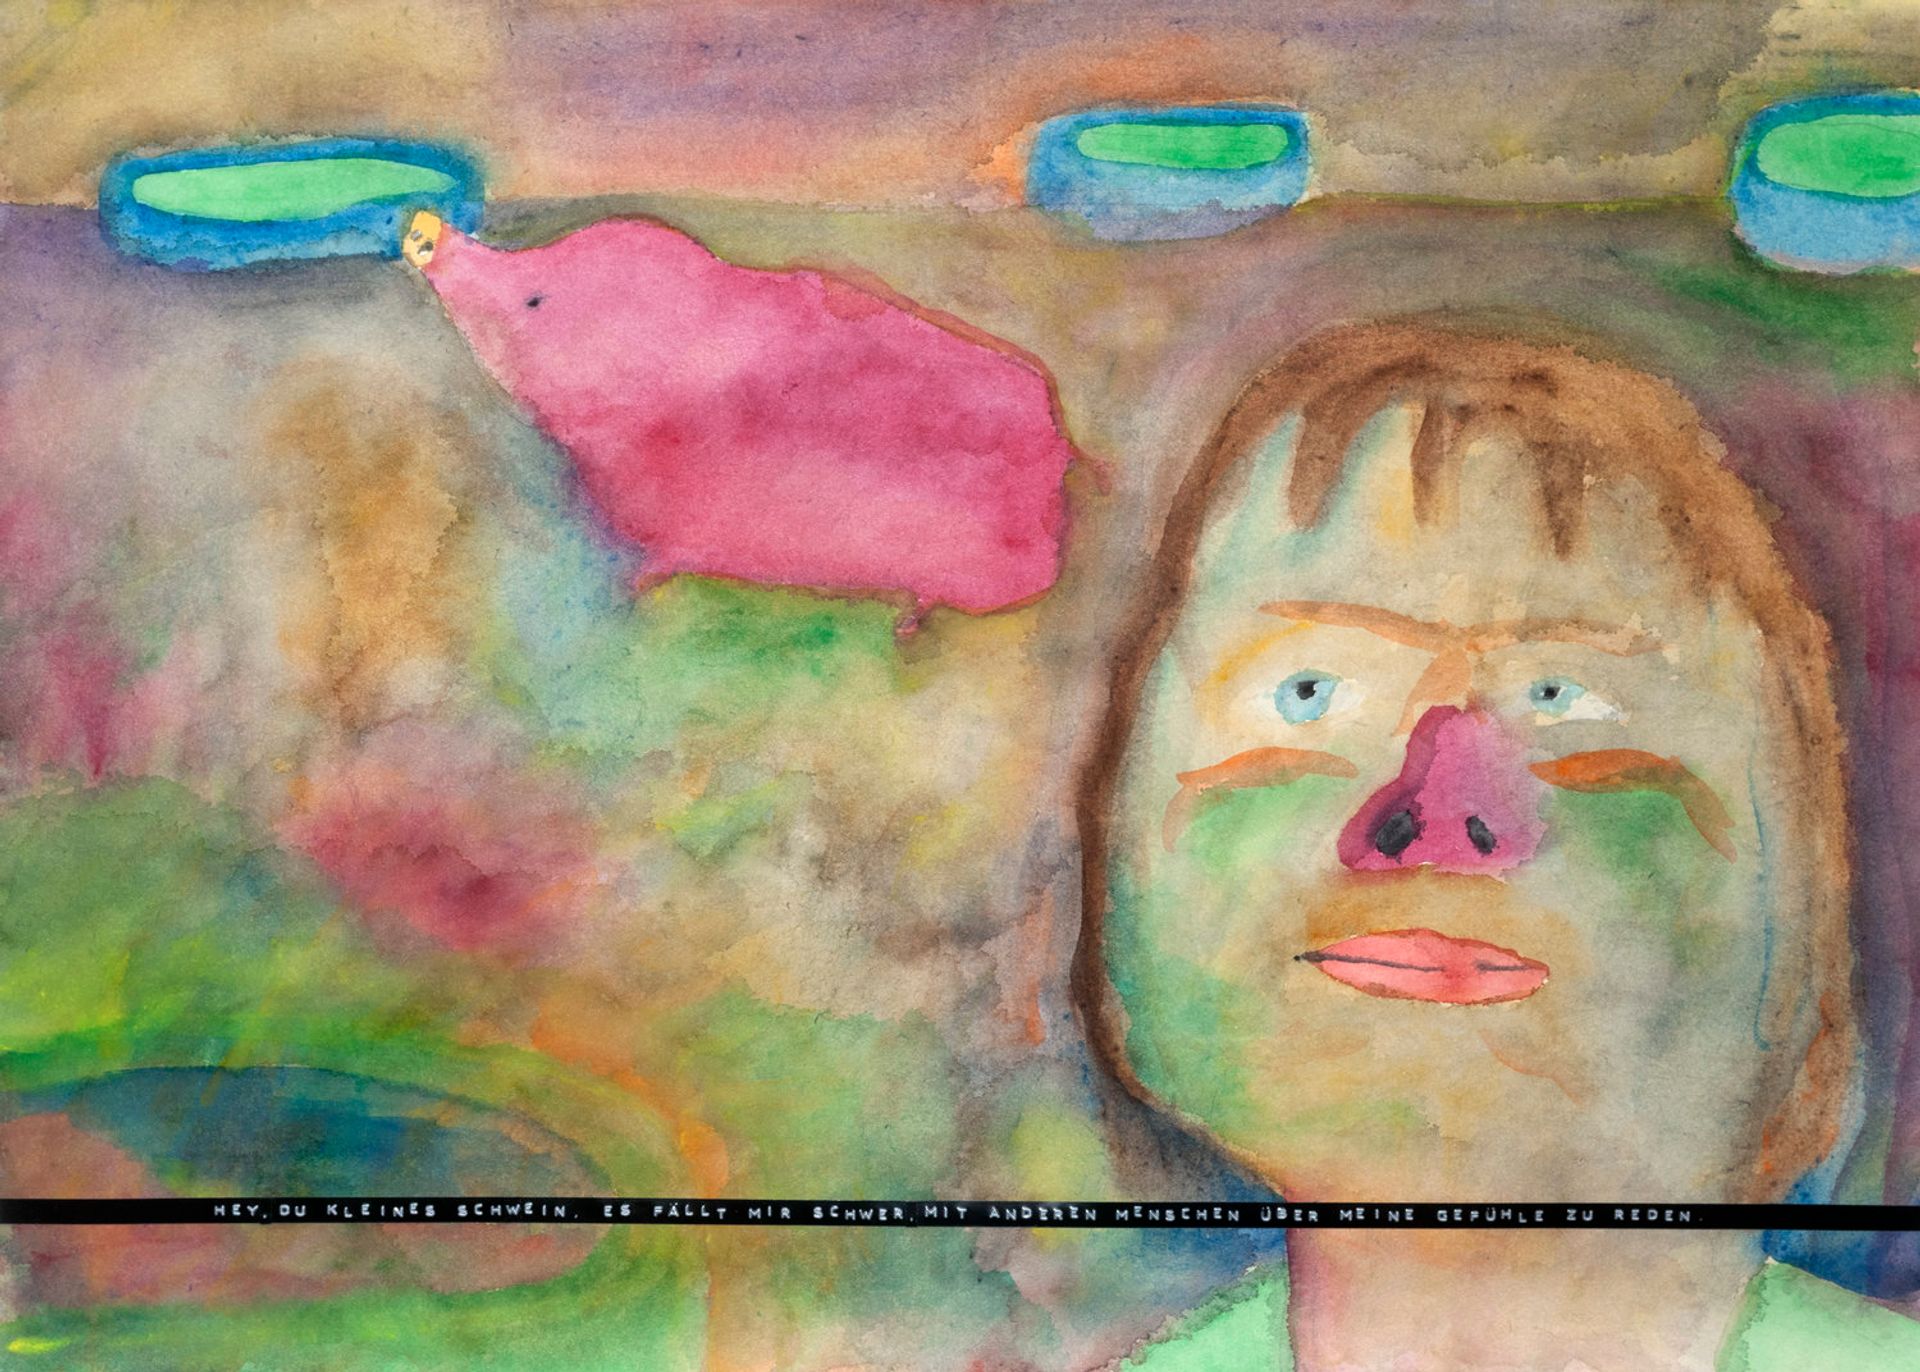 Sebastian Jung, Hey, du kleines Schwein, es fällt mir schwer, mit anderen Menschen über meine Gefühle zu reden., 2016, watercolor, pencil and labelmaker tape on paper, 50 × 70 cm